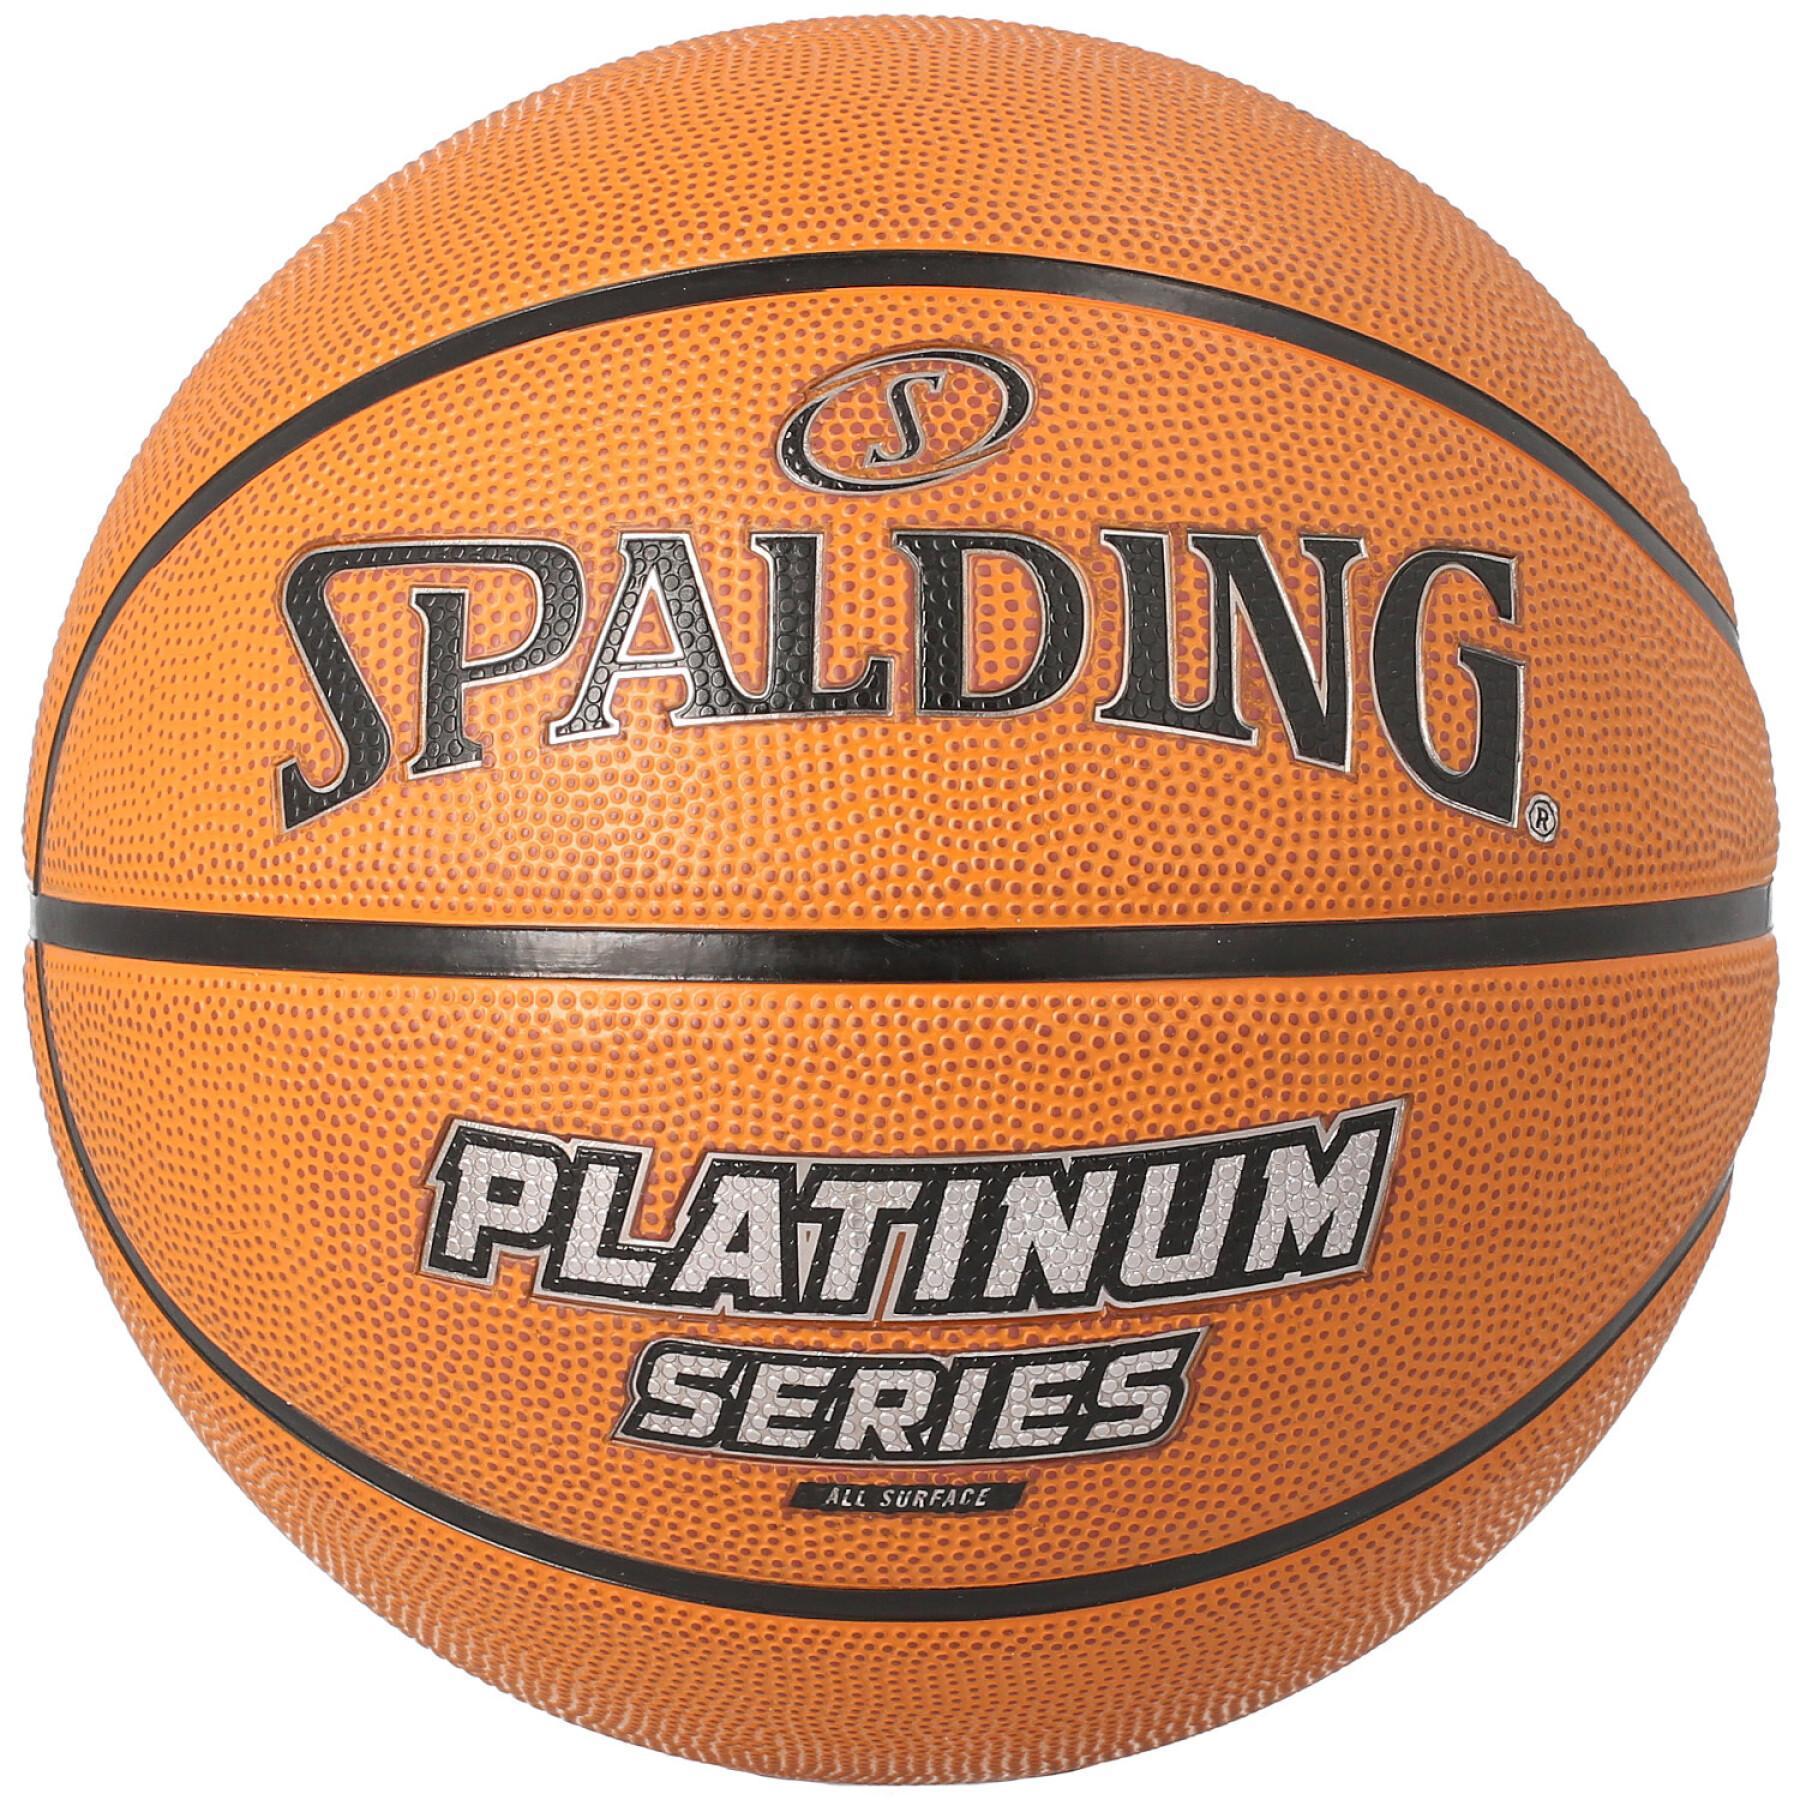 Bola Spalding Platinum Series borracha